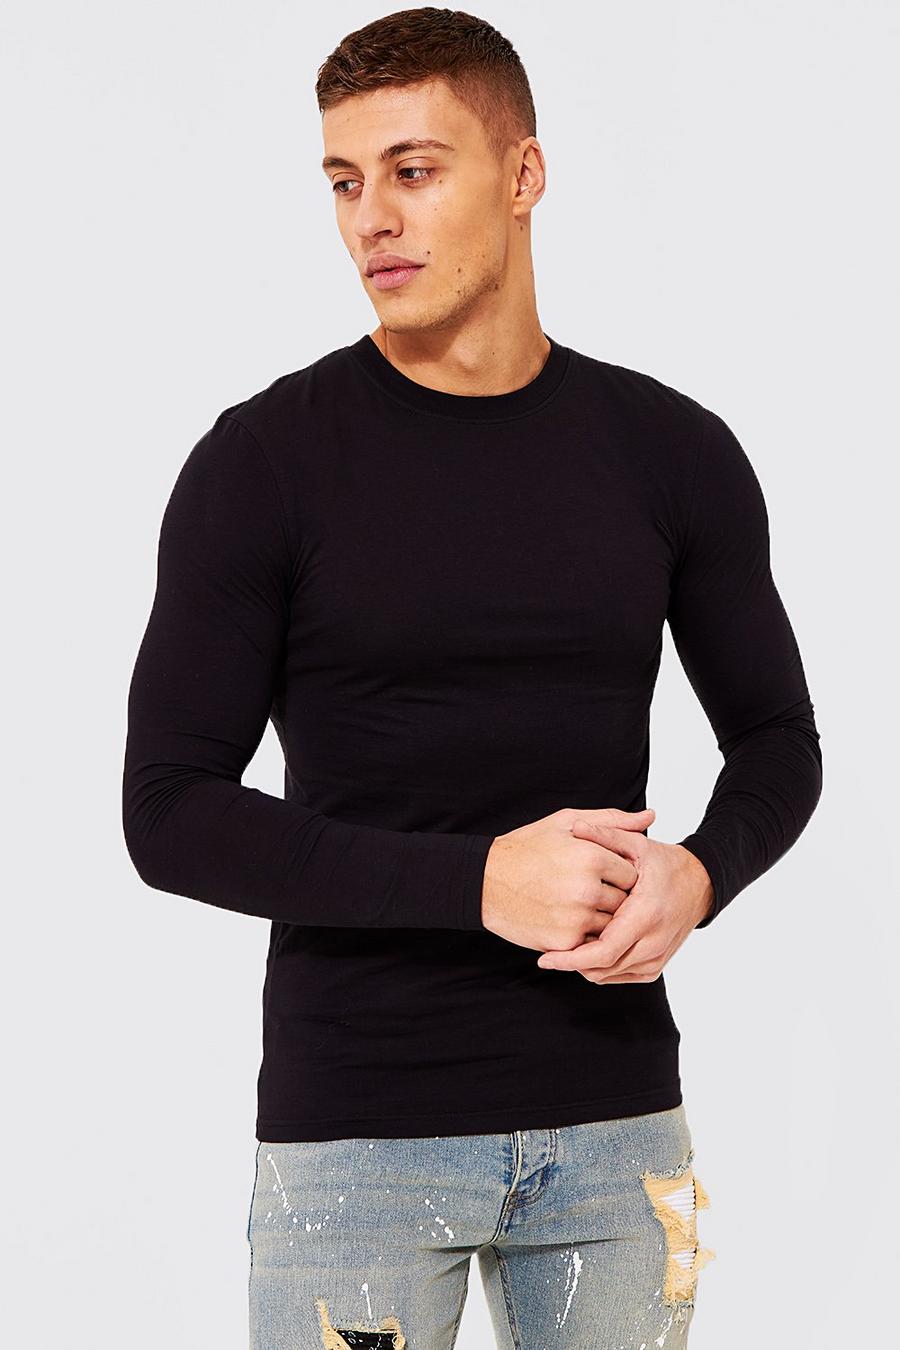 Black svart Långärmad t-shirt i muscle fit